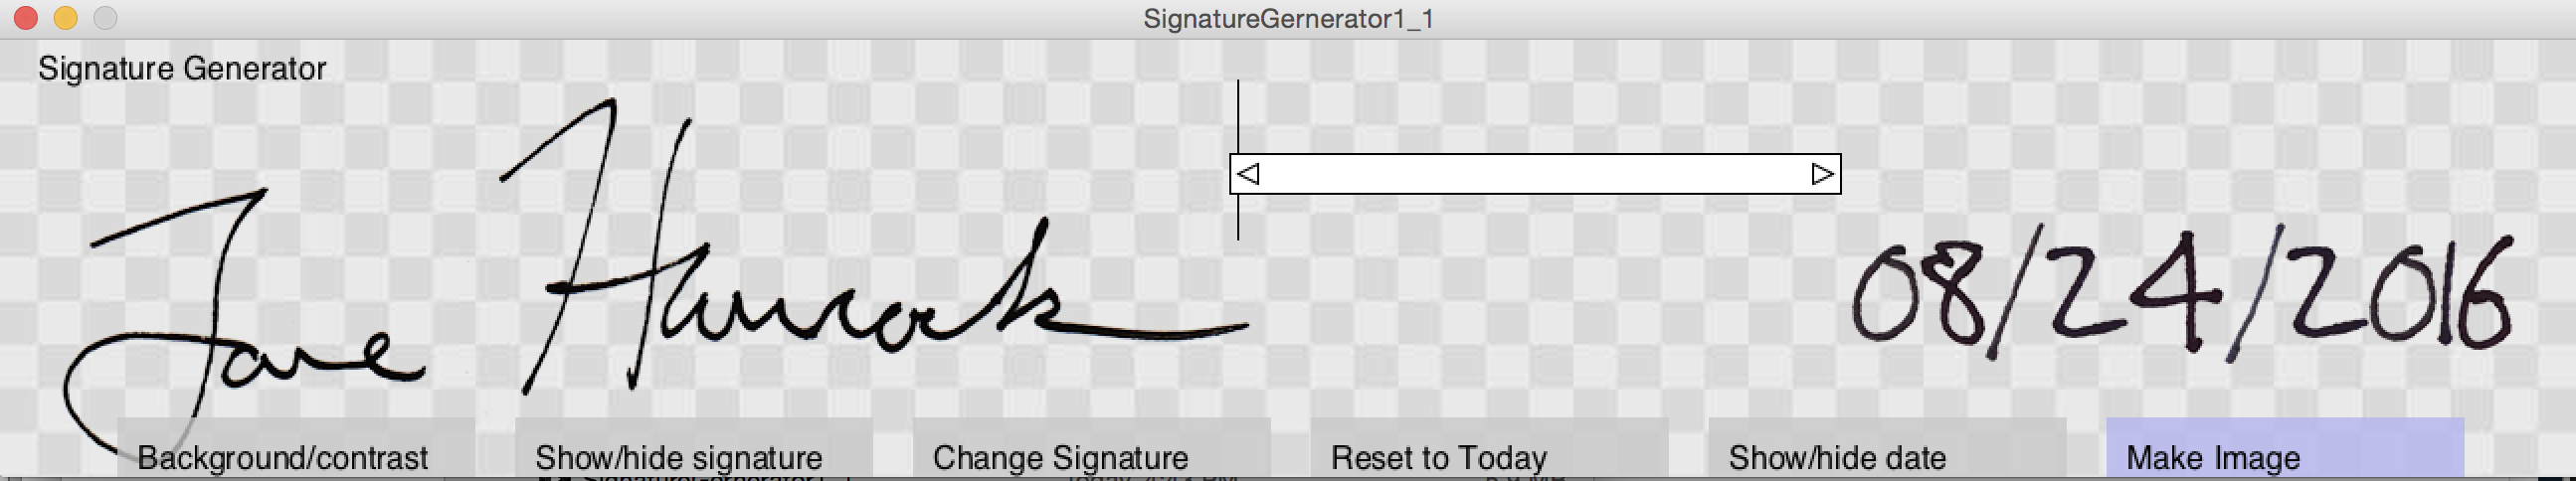 Signature Generator.